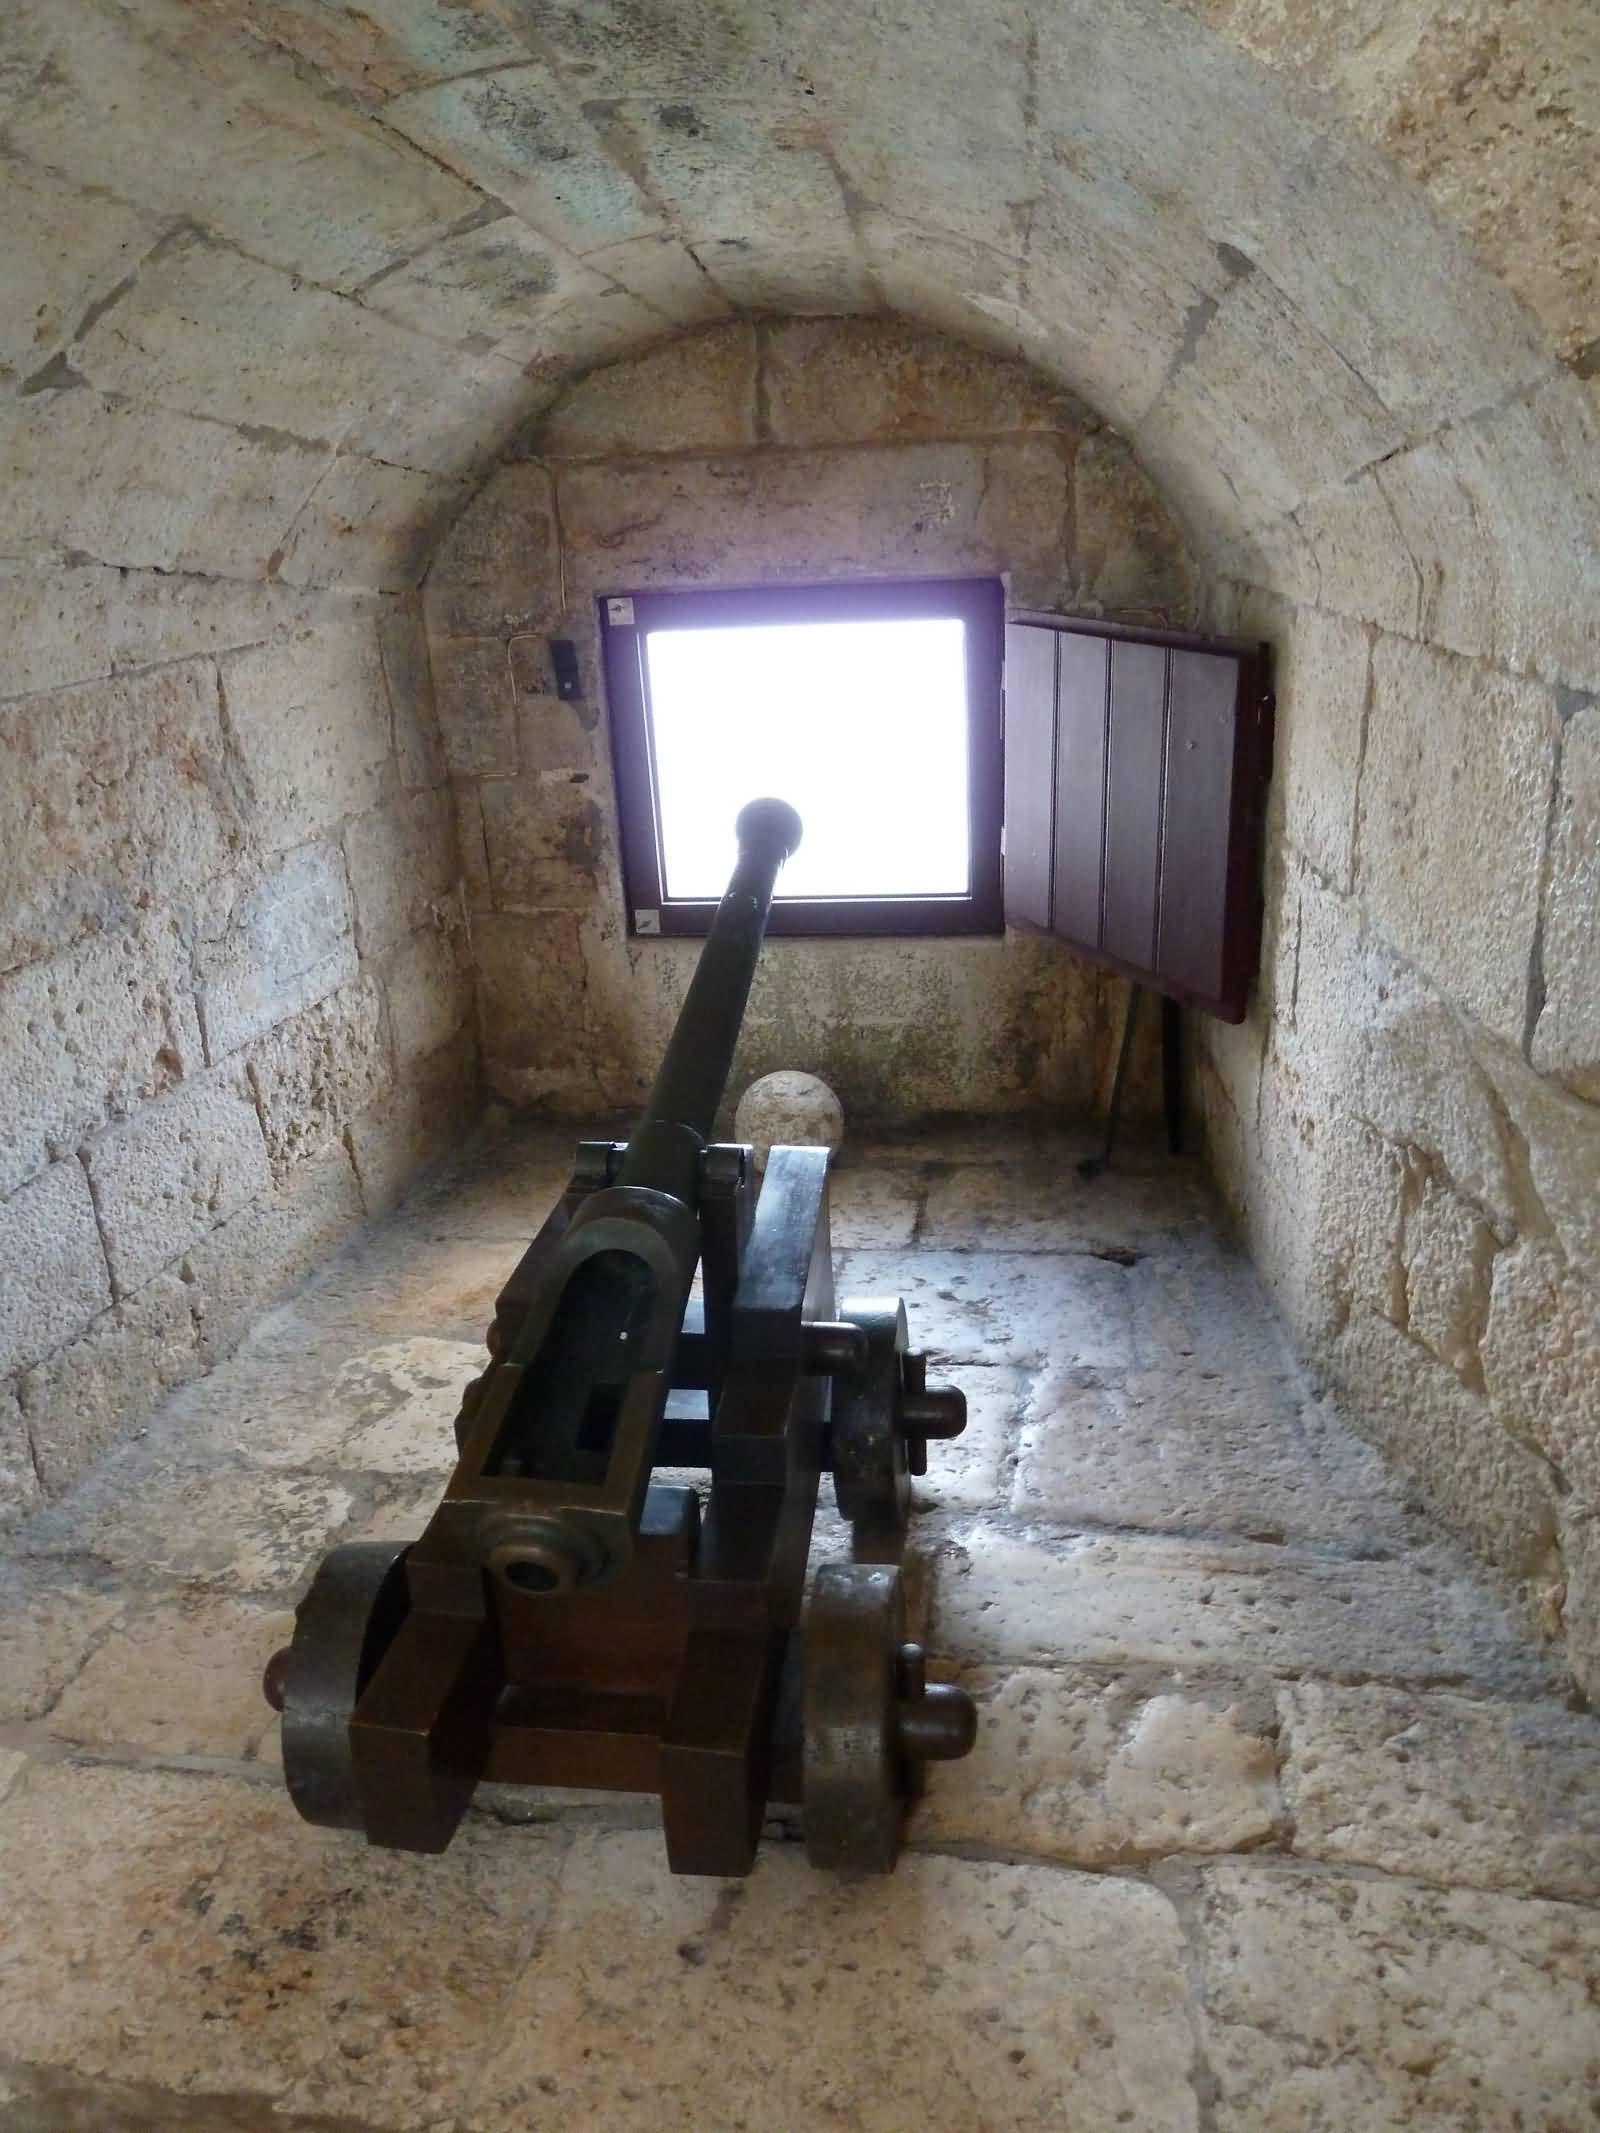 Machine Gun Inside The Belem Tower